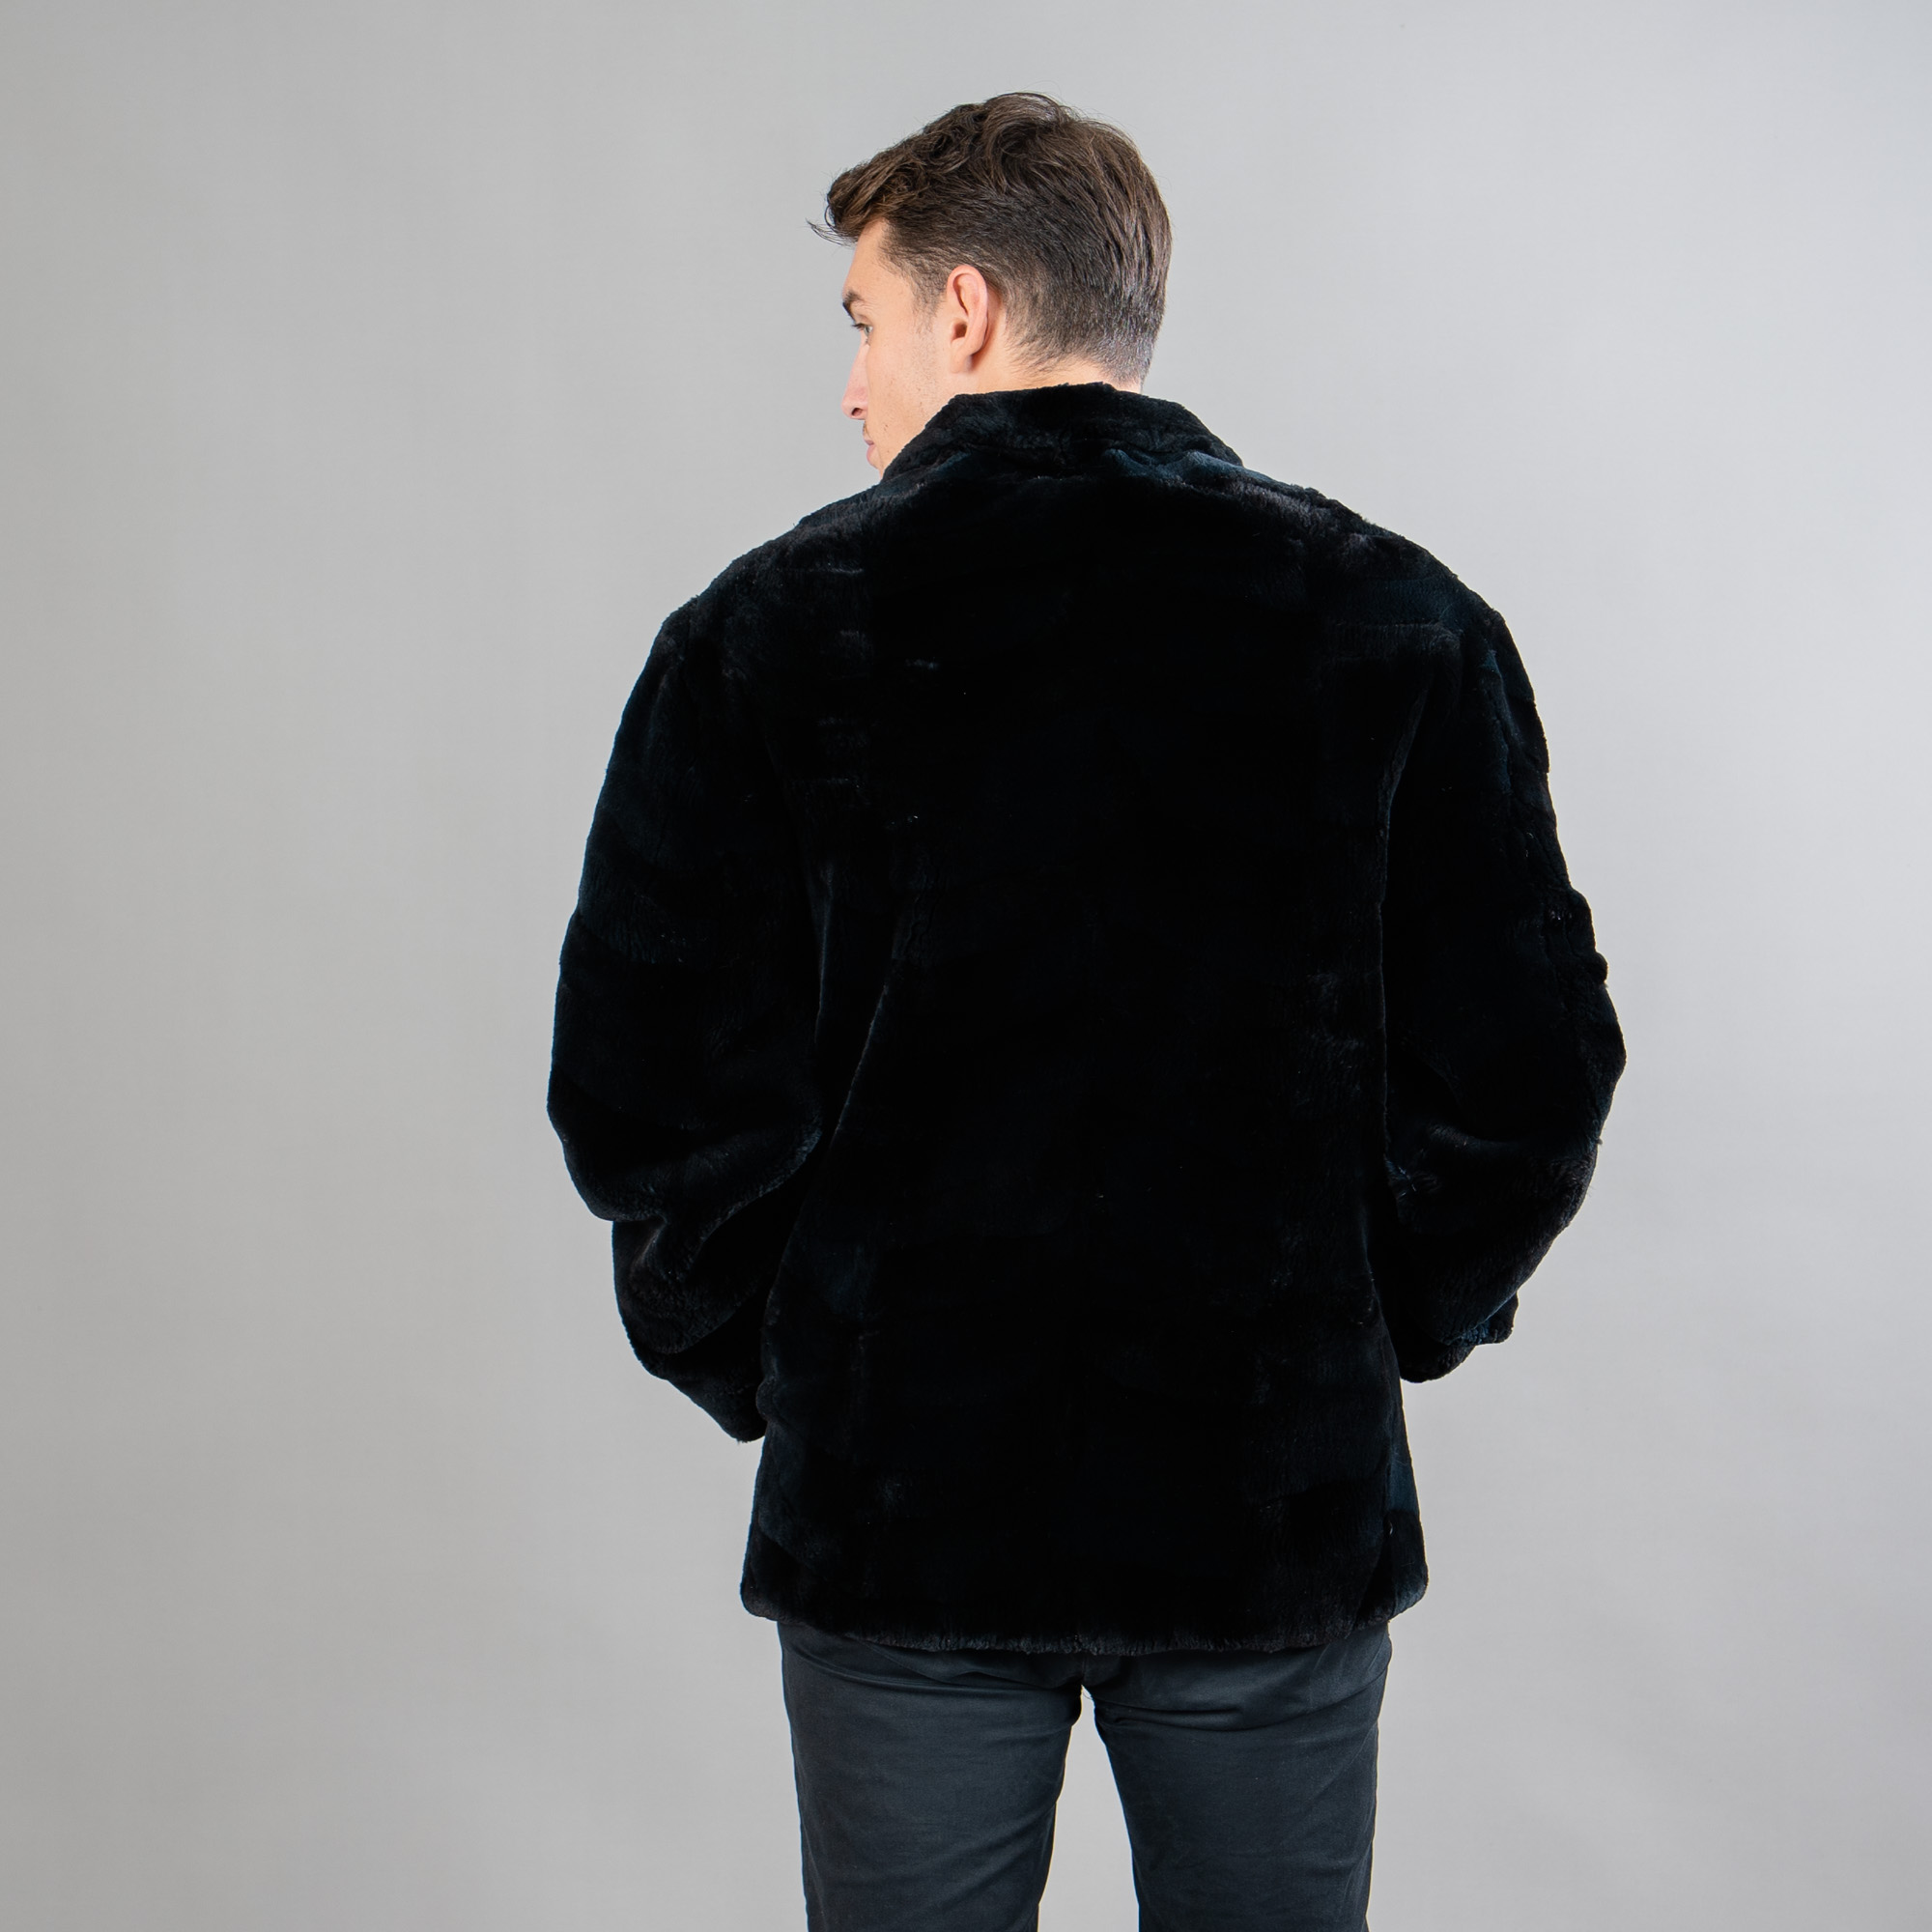 Beaver fur jacket in black color